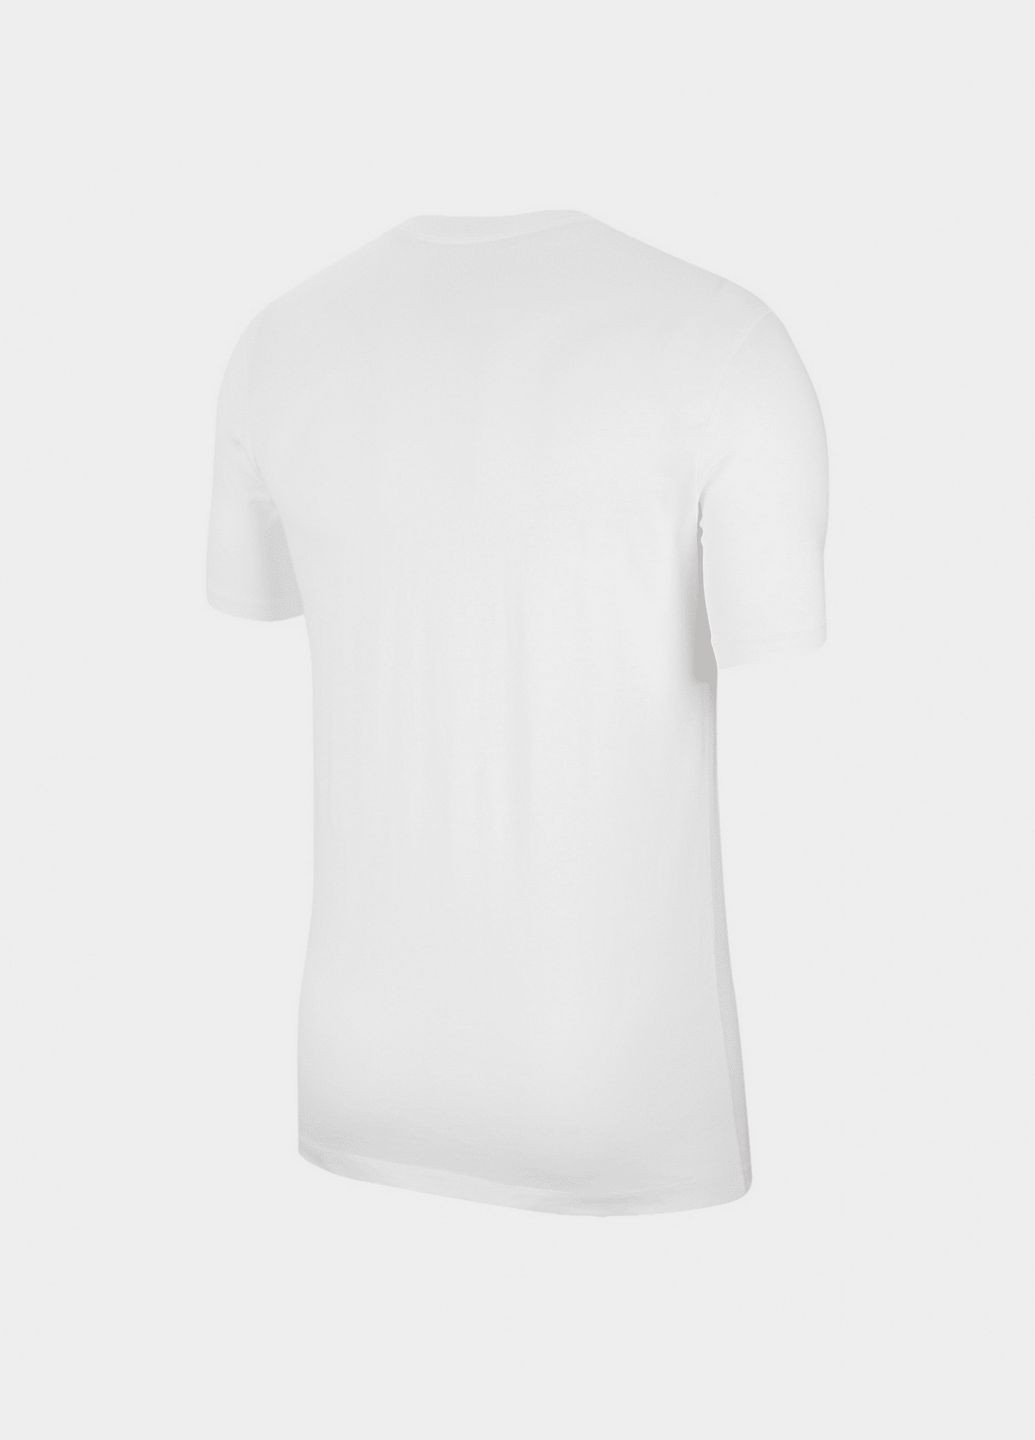 Біла футболка чоловіча tee icon futura ar5004-101 біла Nike